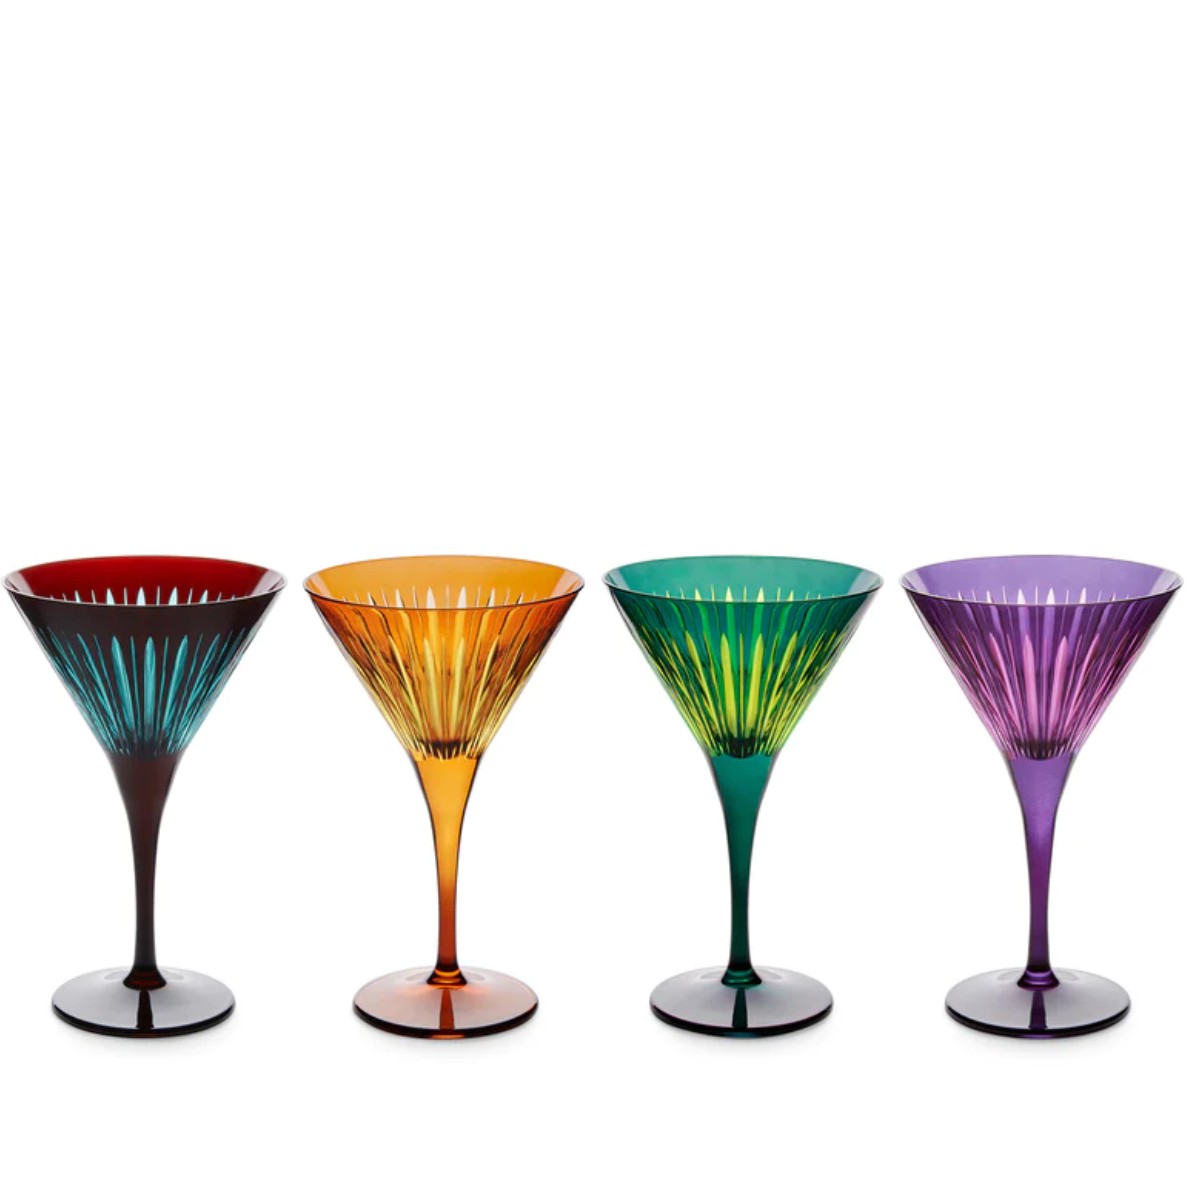 L’Objet | Prism Martini Glasses Set of 4 | Assorted